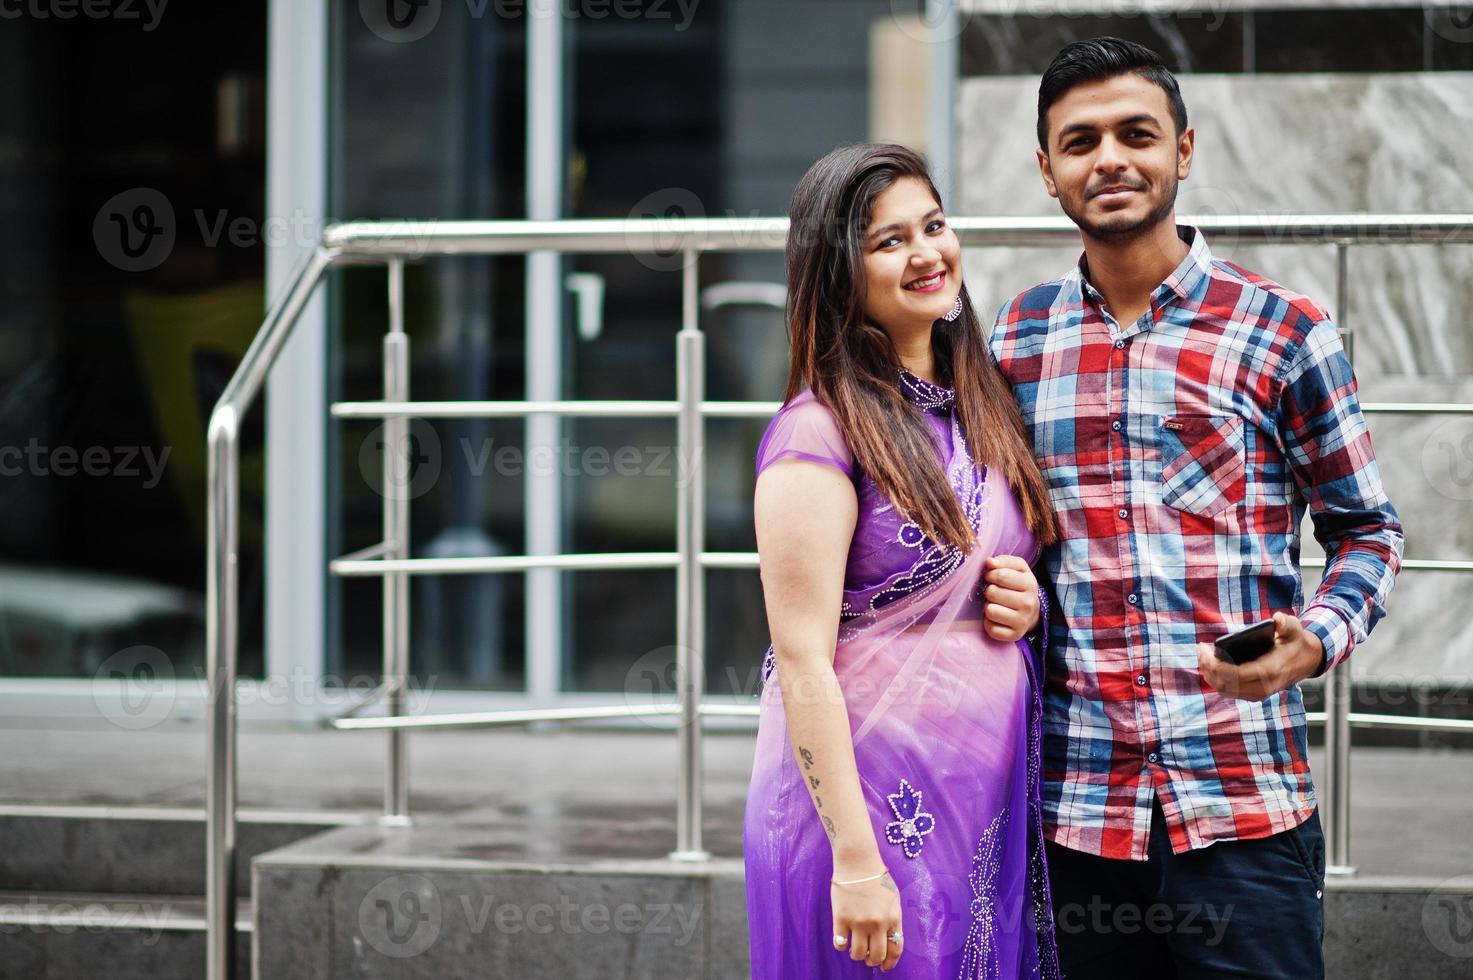 elegante pareja hindú india posó en la calle. foto